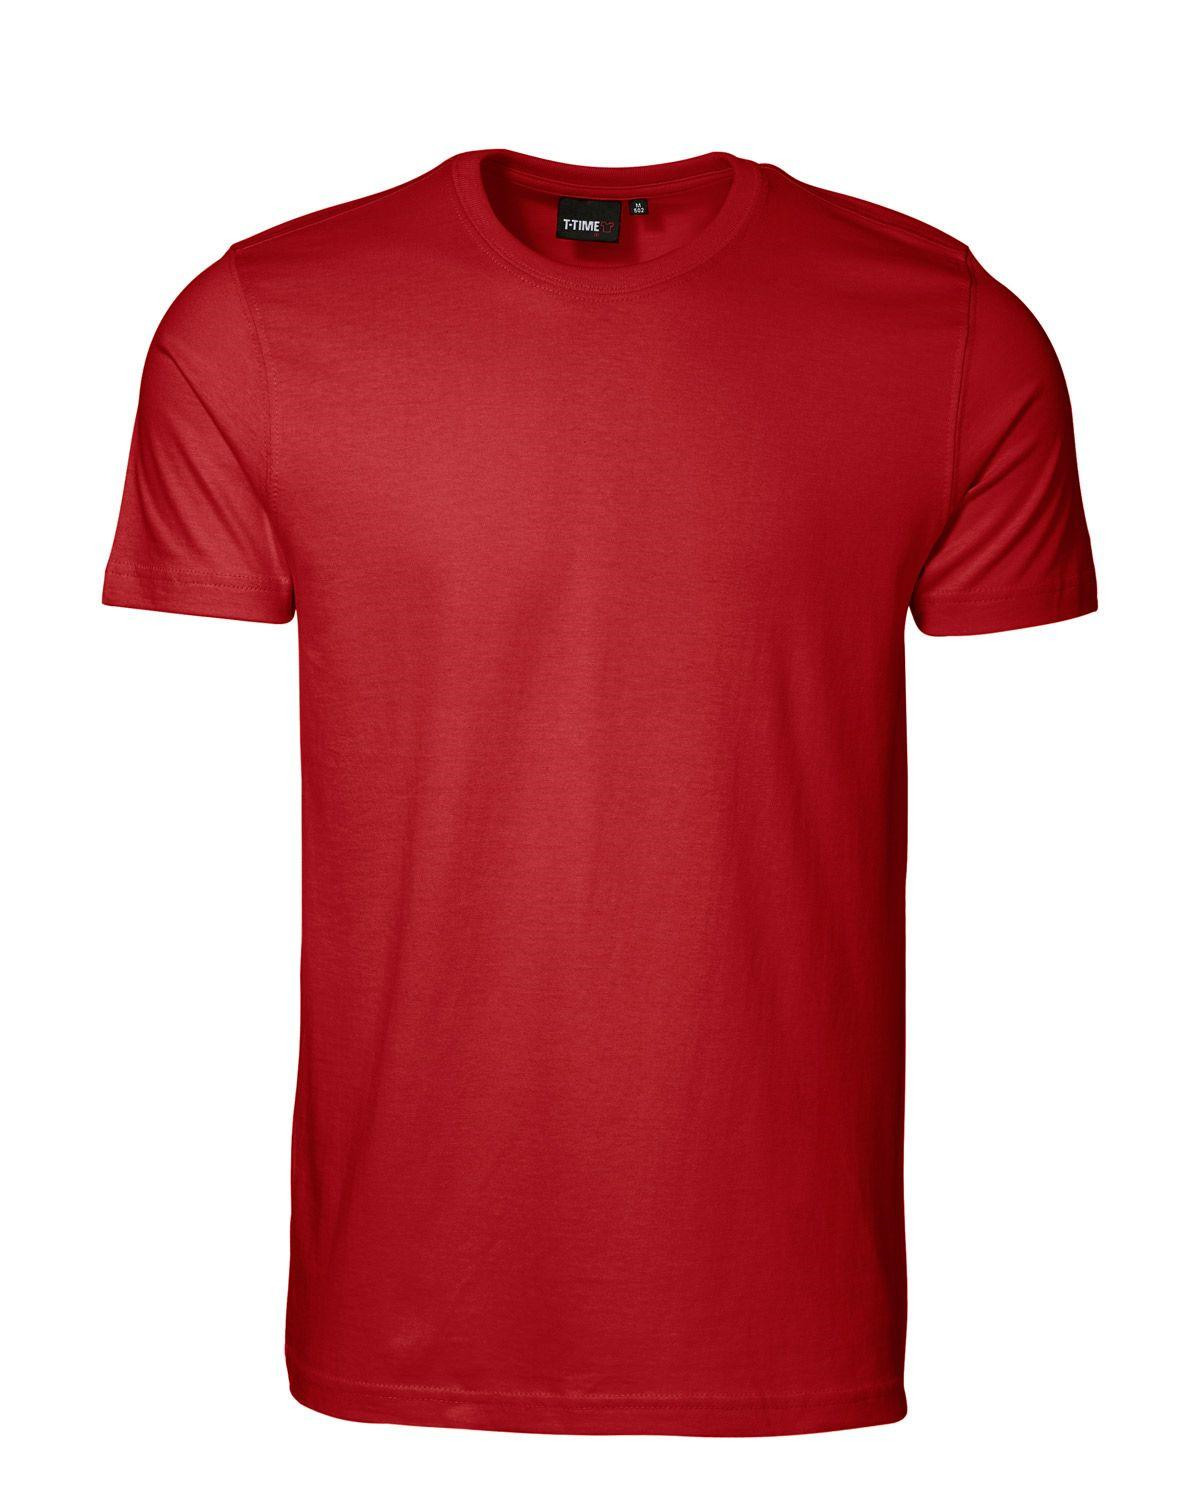 ID T-shirt, Sporty-Fit (Rød, XL)